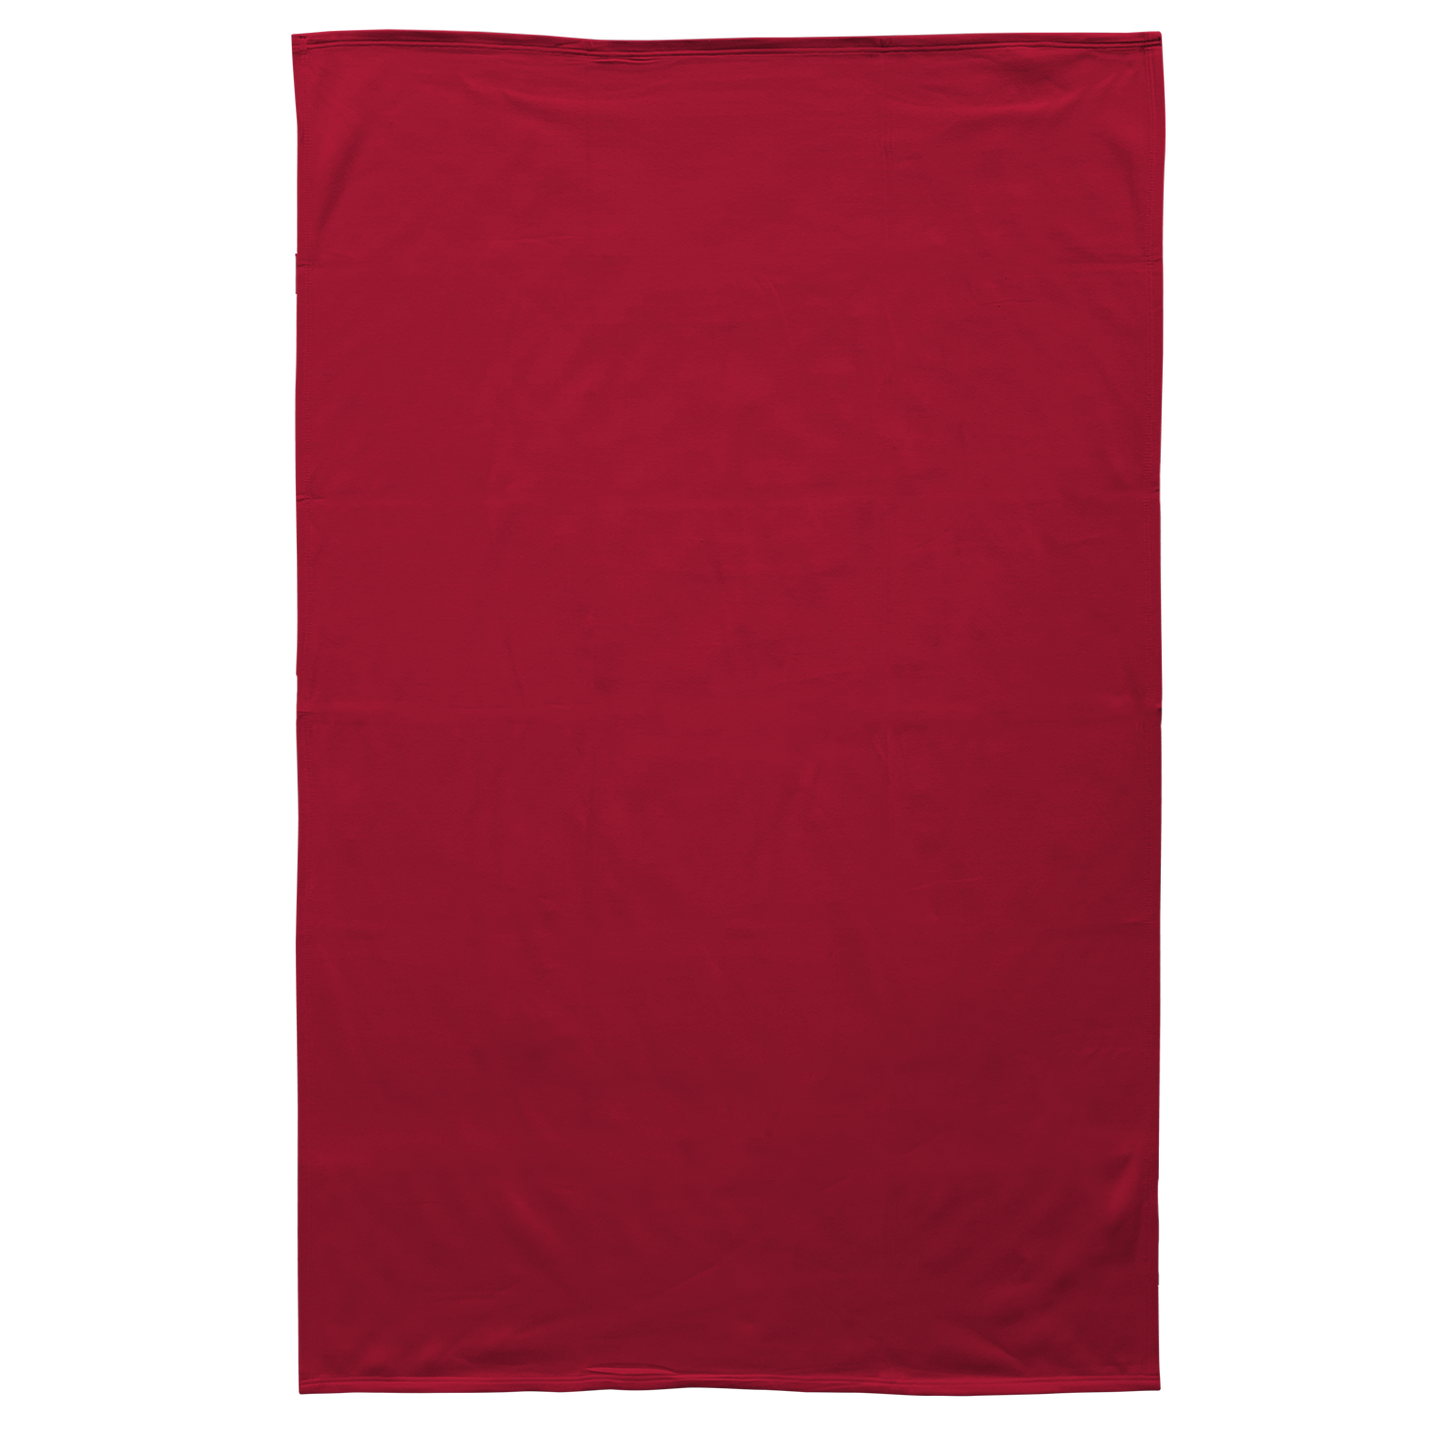 Pro-Weave® Sweatshirt Blanket - Crimson